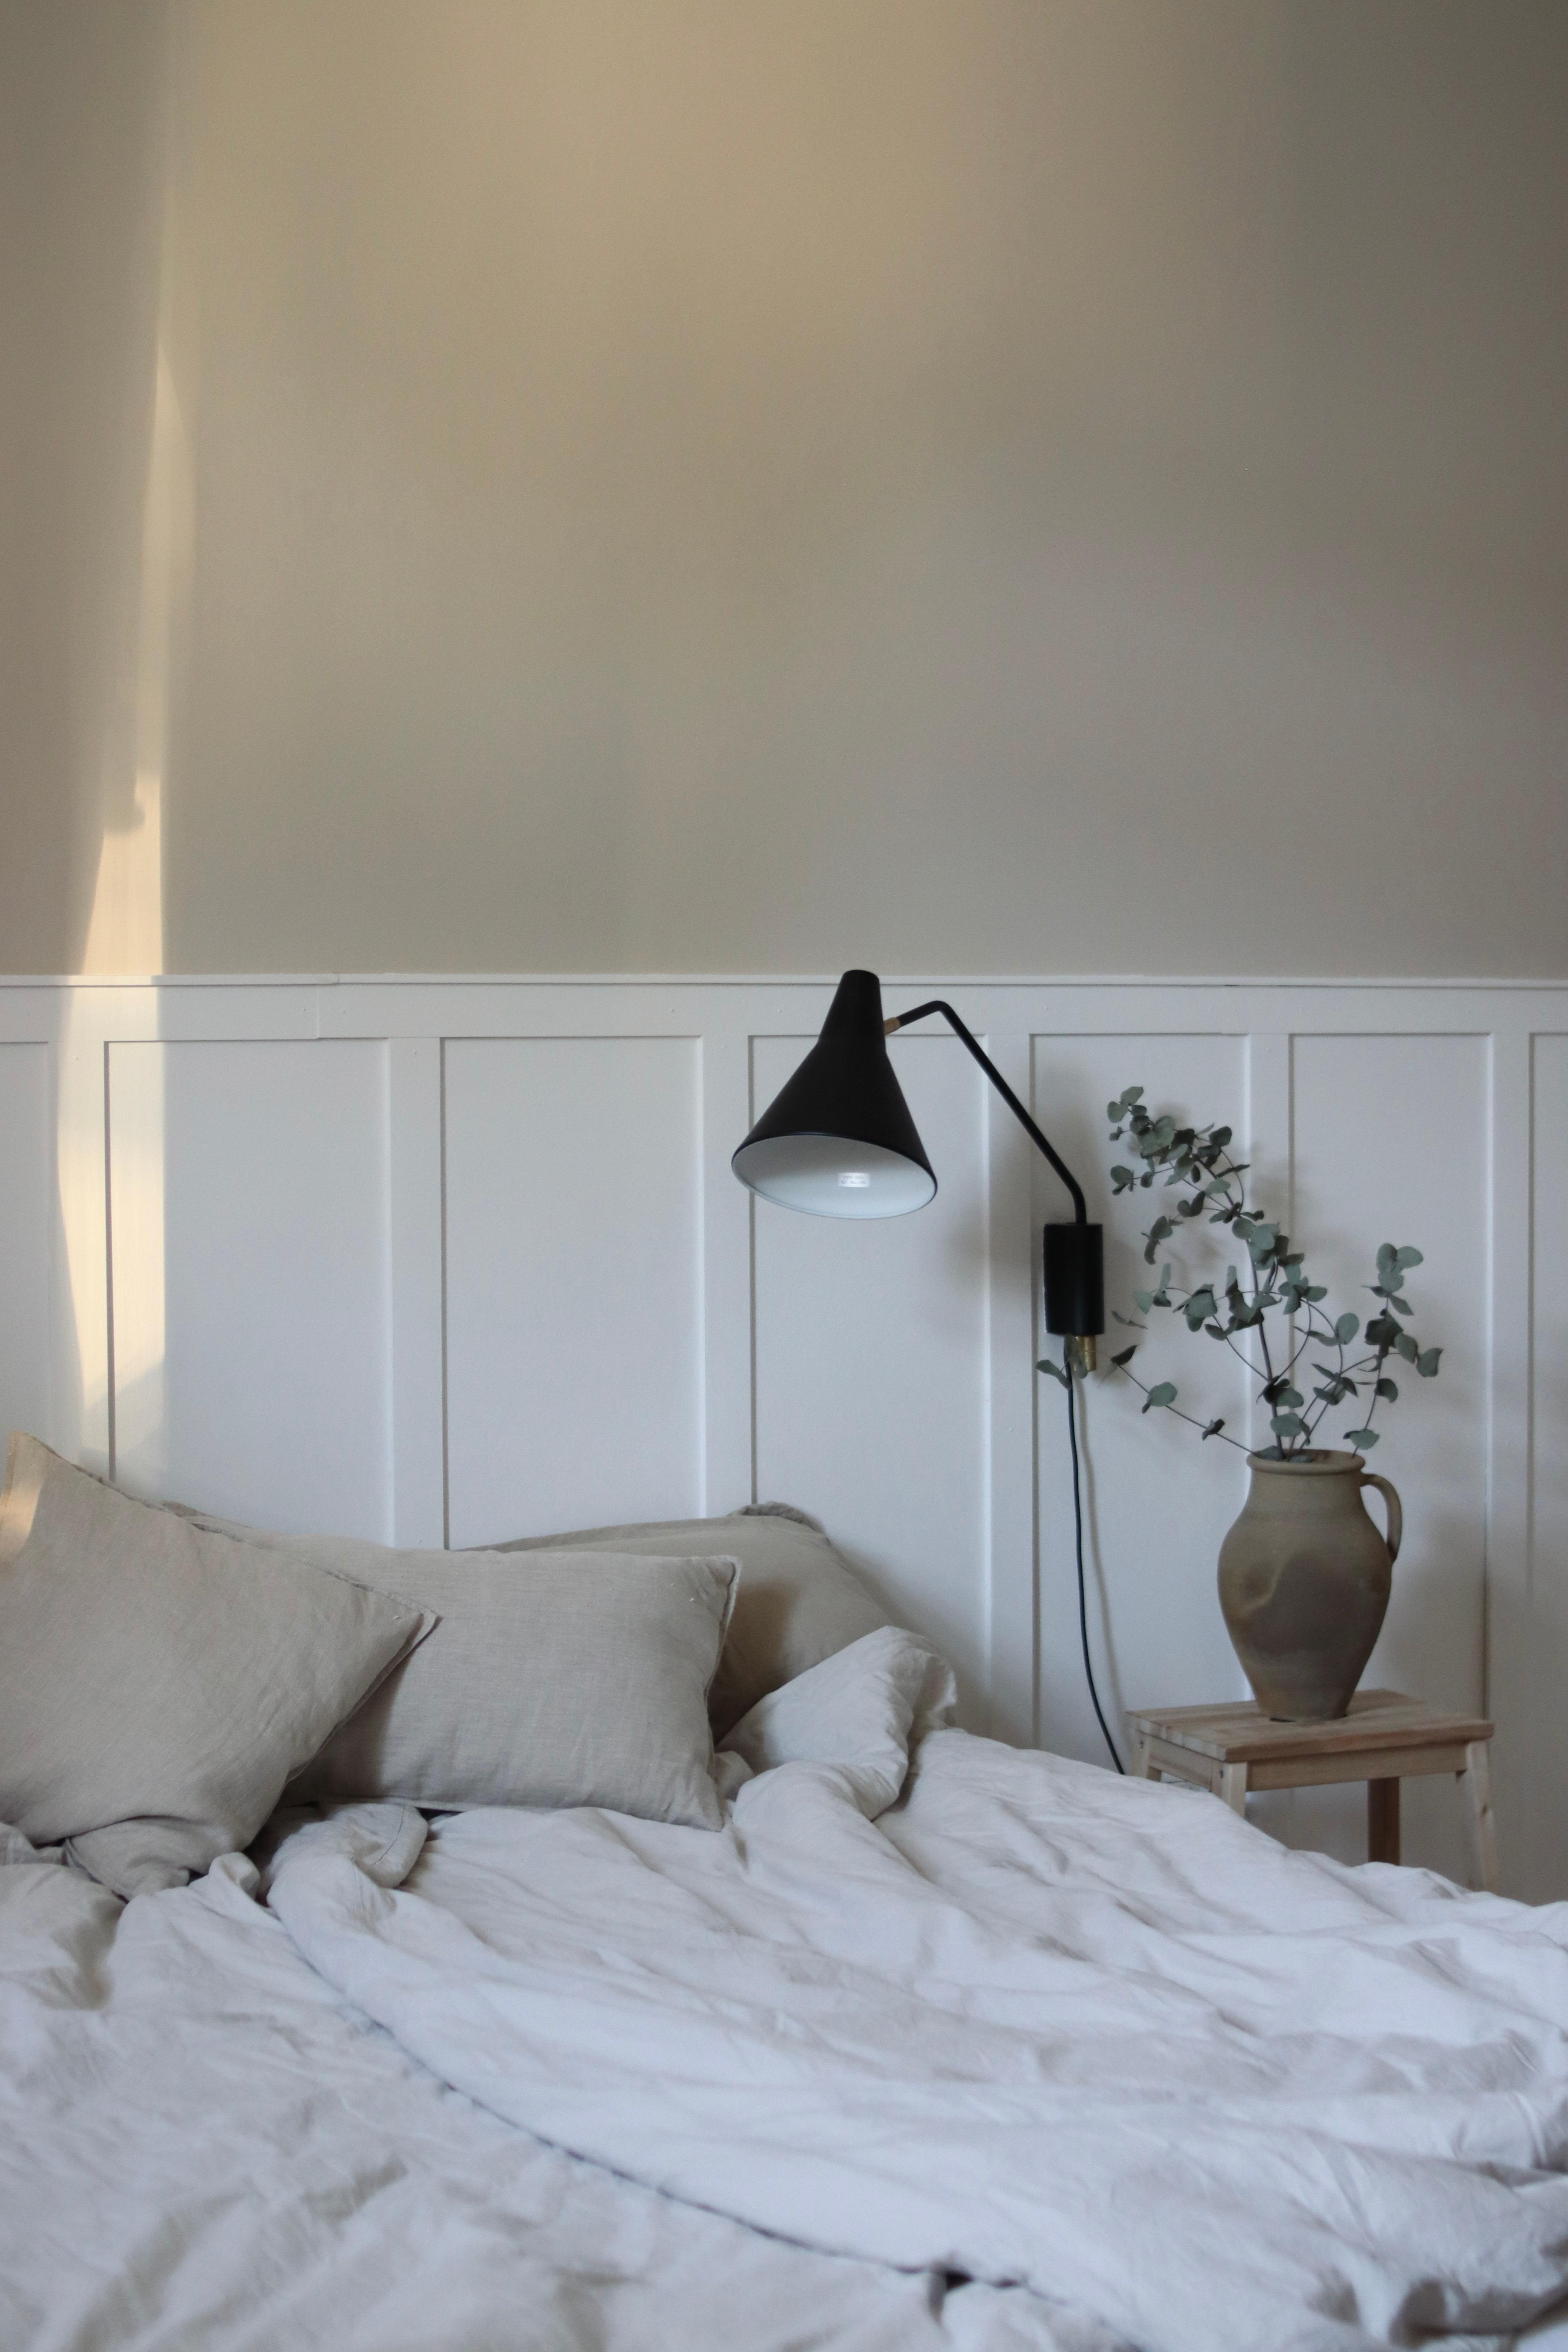 Where u find me today 🤍
#bedroom#diy#wandverkleidung